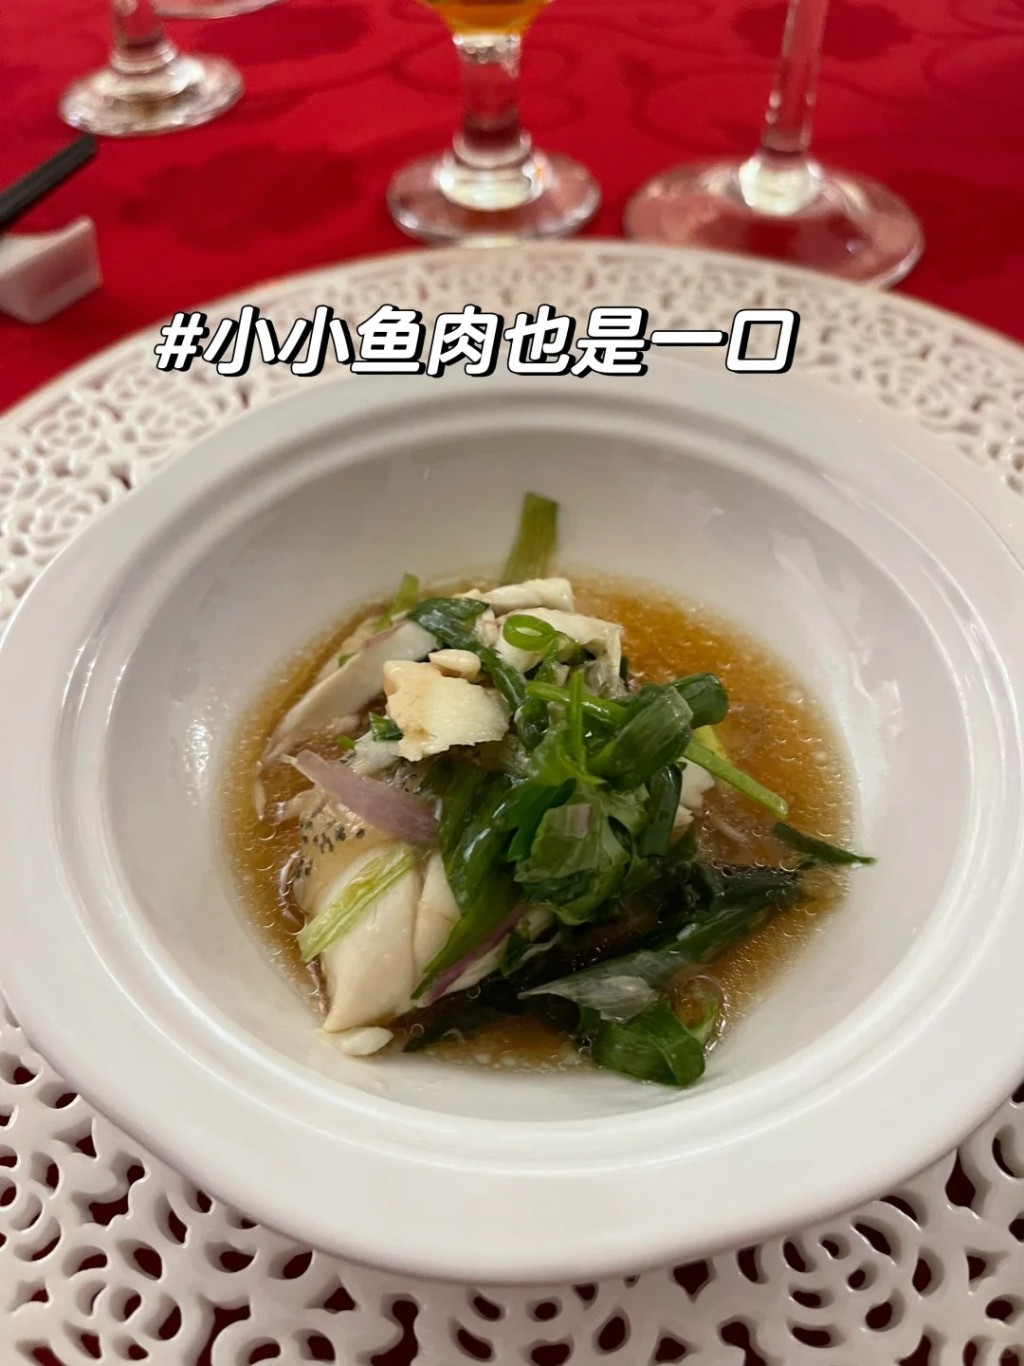 內地網民對婚禮採用「分餐制」模式大感驚訝，表示「小小魚肉也是一口」